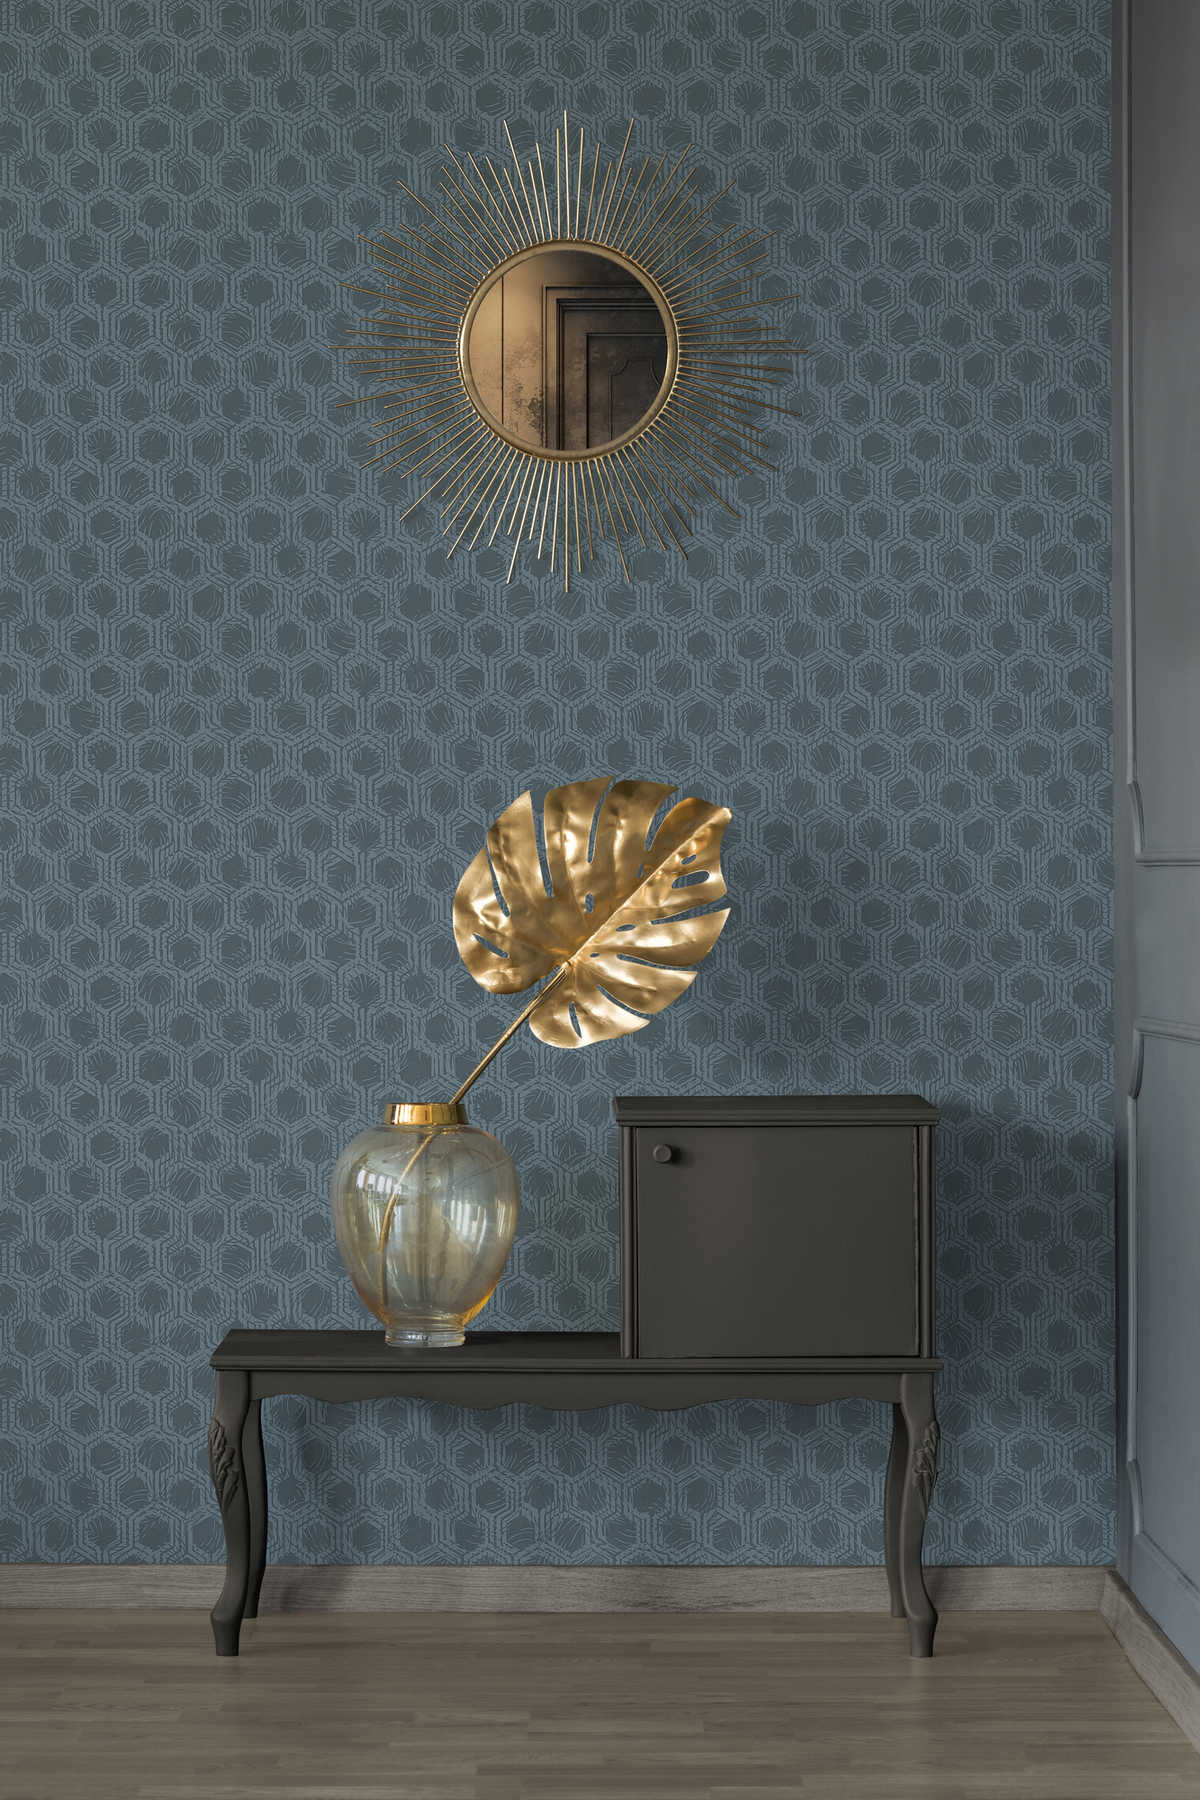             Hexagon patroon behang in ethno stijl - blauw, metallic
        